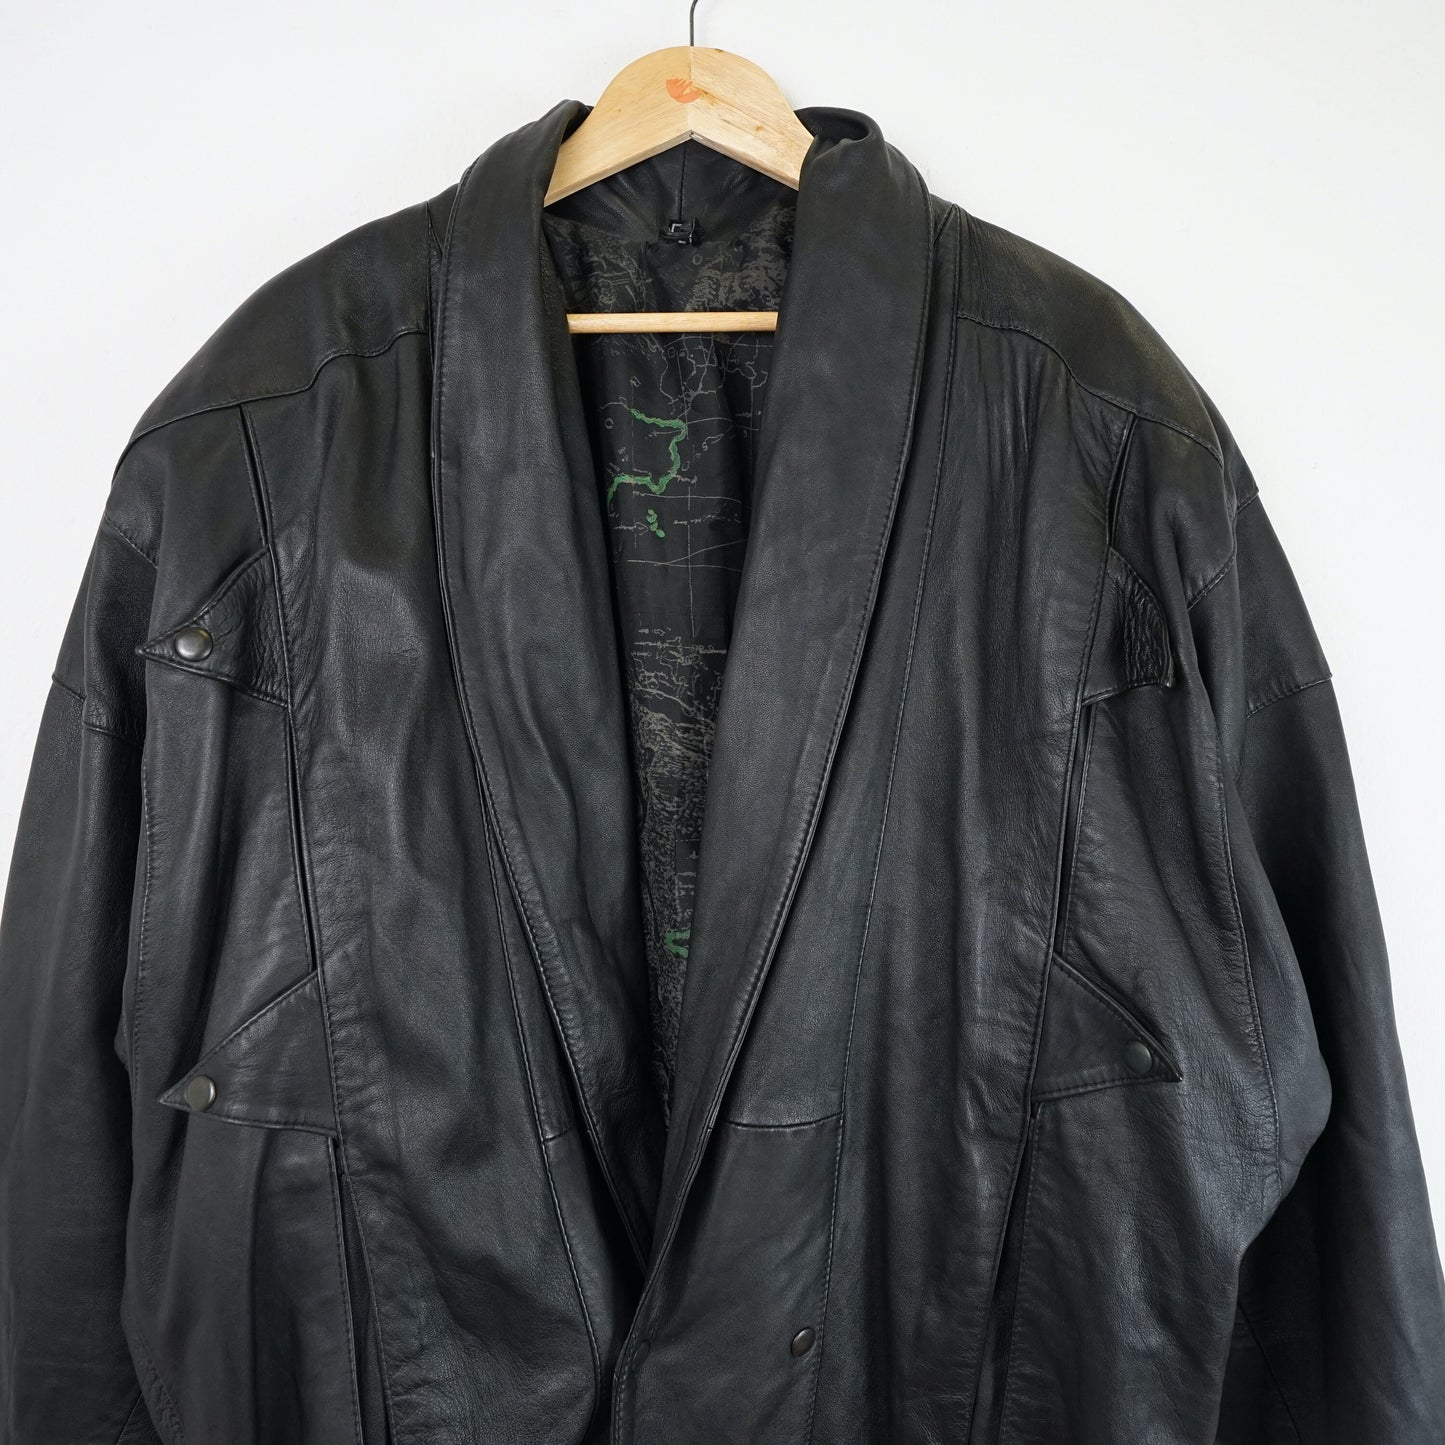 Vintage 80s leather bomber Jacket Size L